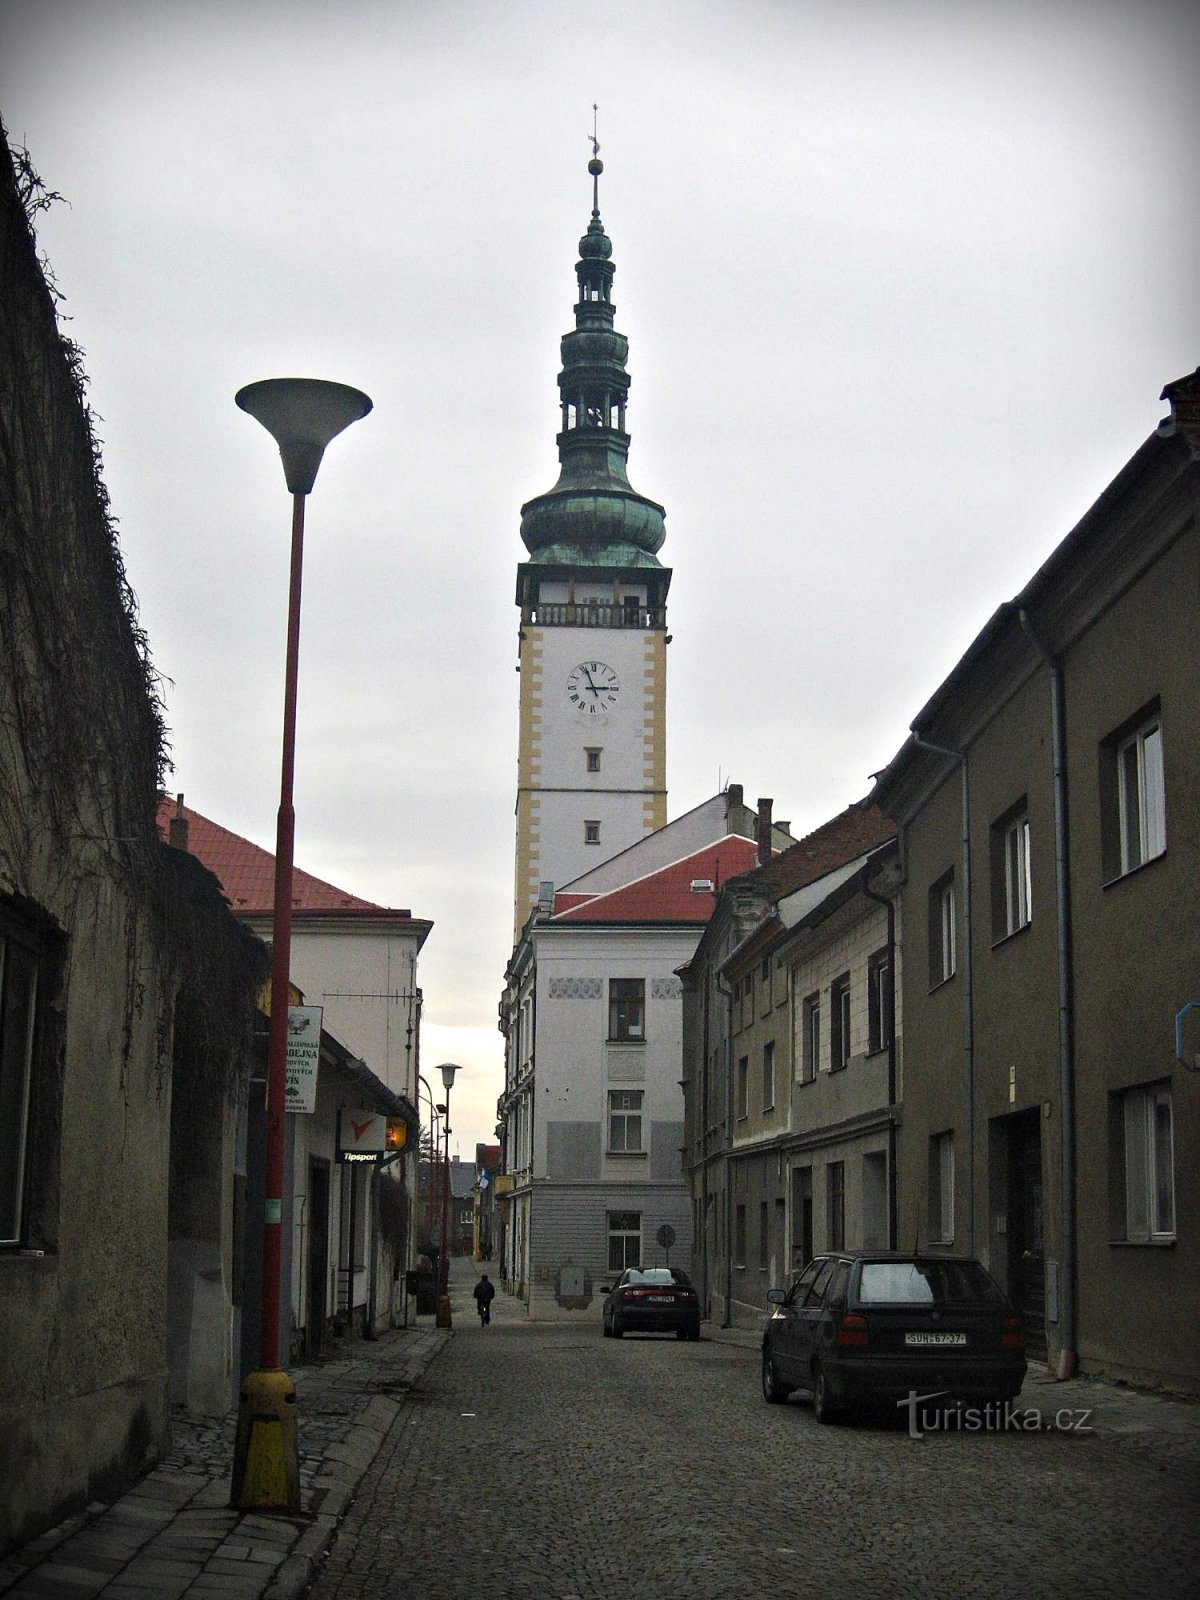 Το δημαρχείο του Litovel και ο πύργος του